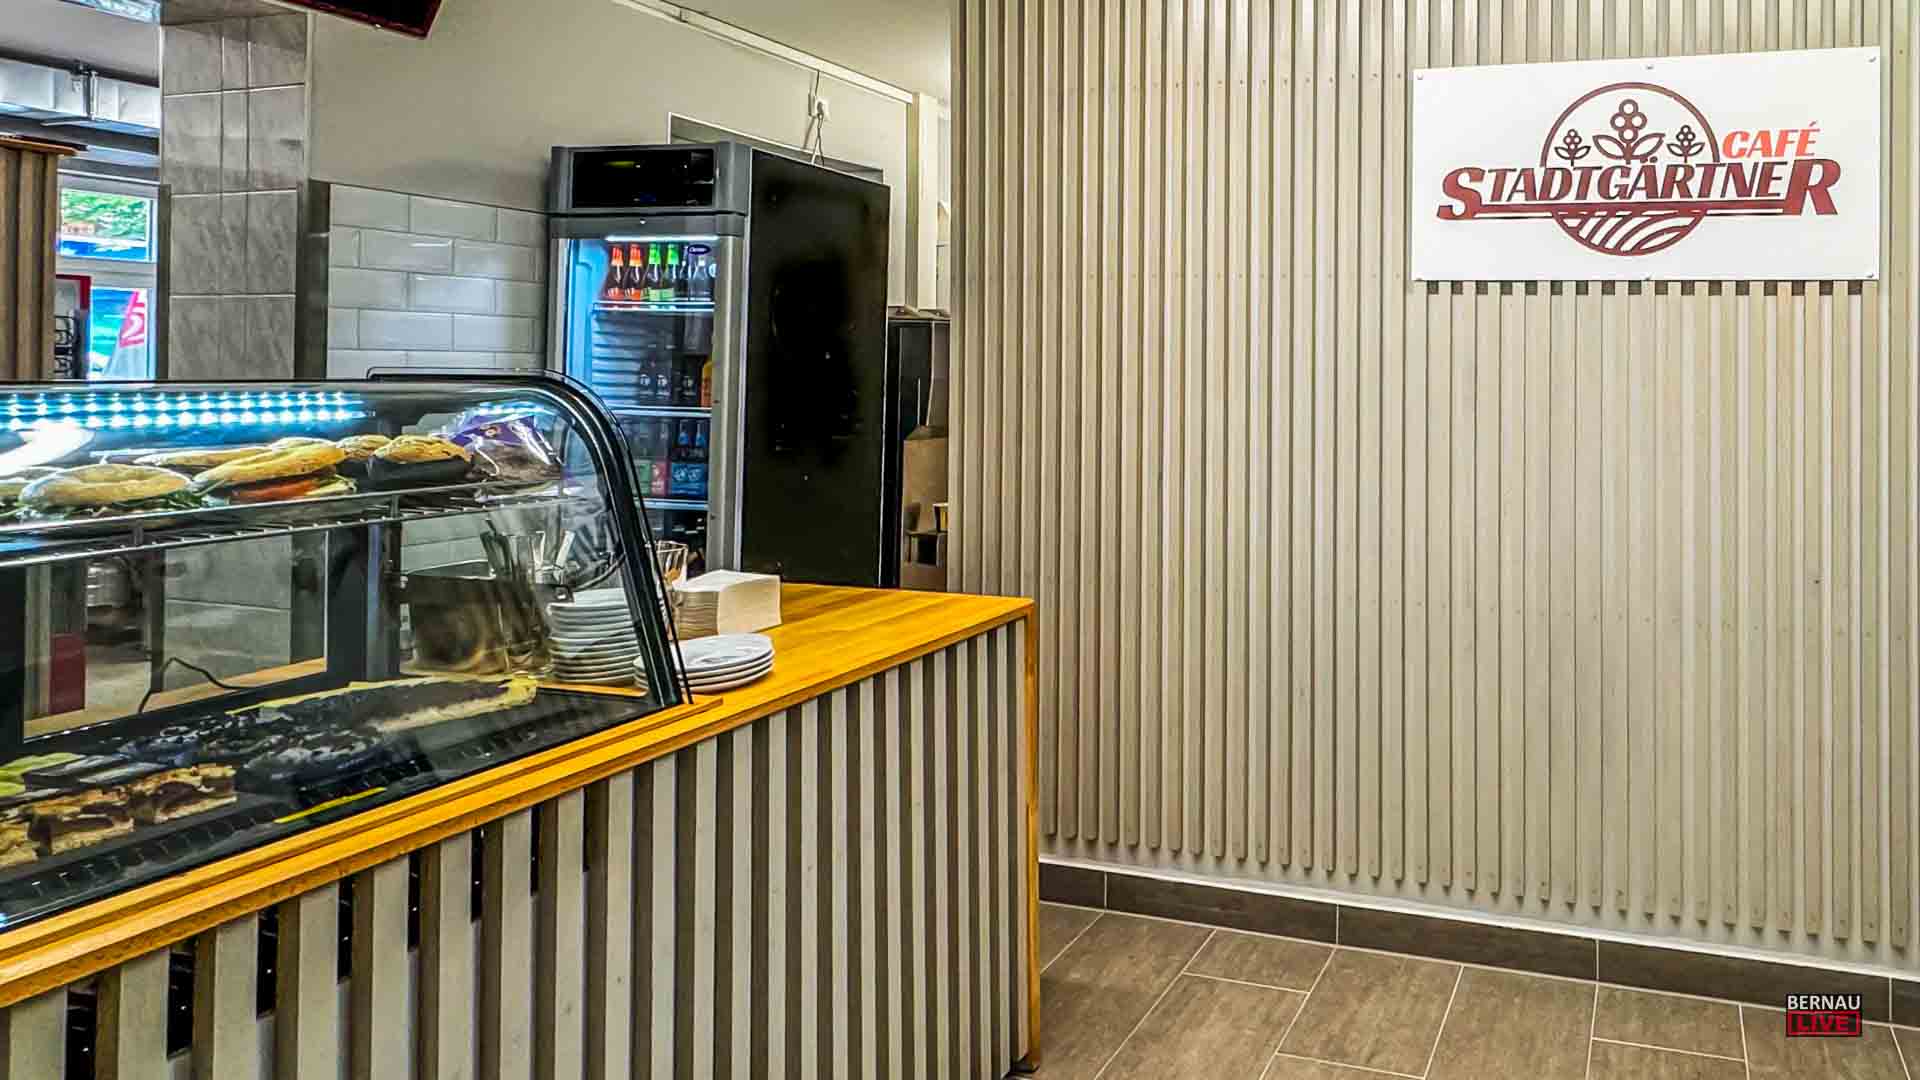 Neueröffnung Bistro "Stadtgärtner" in Bernau: Softeis, Flammkuchen, Beagels, Café